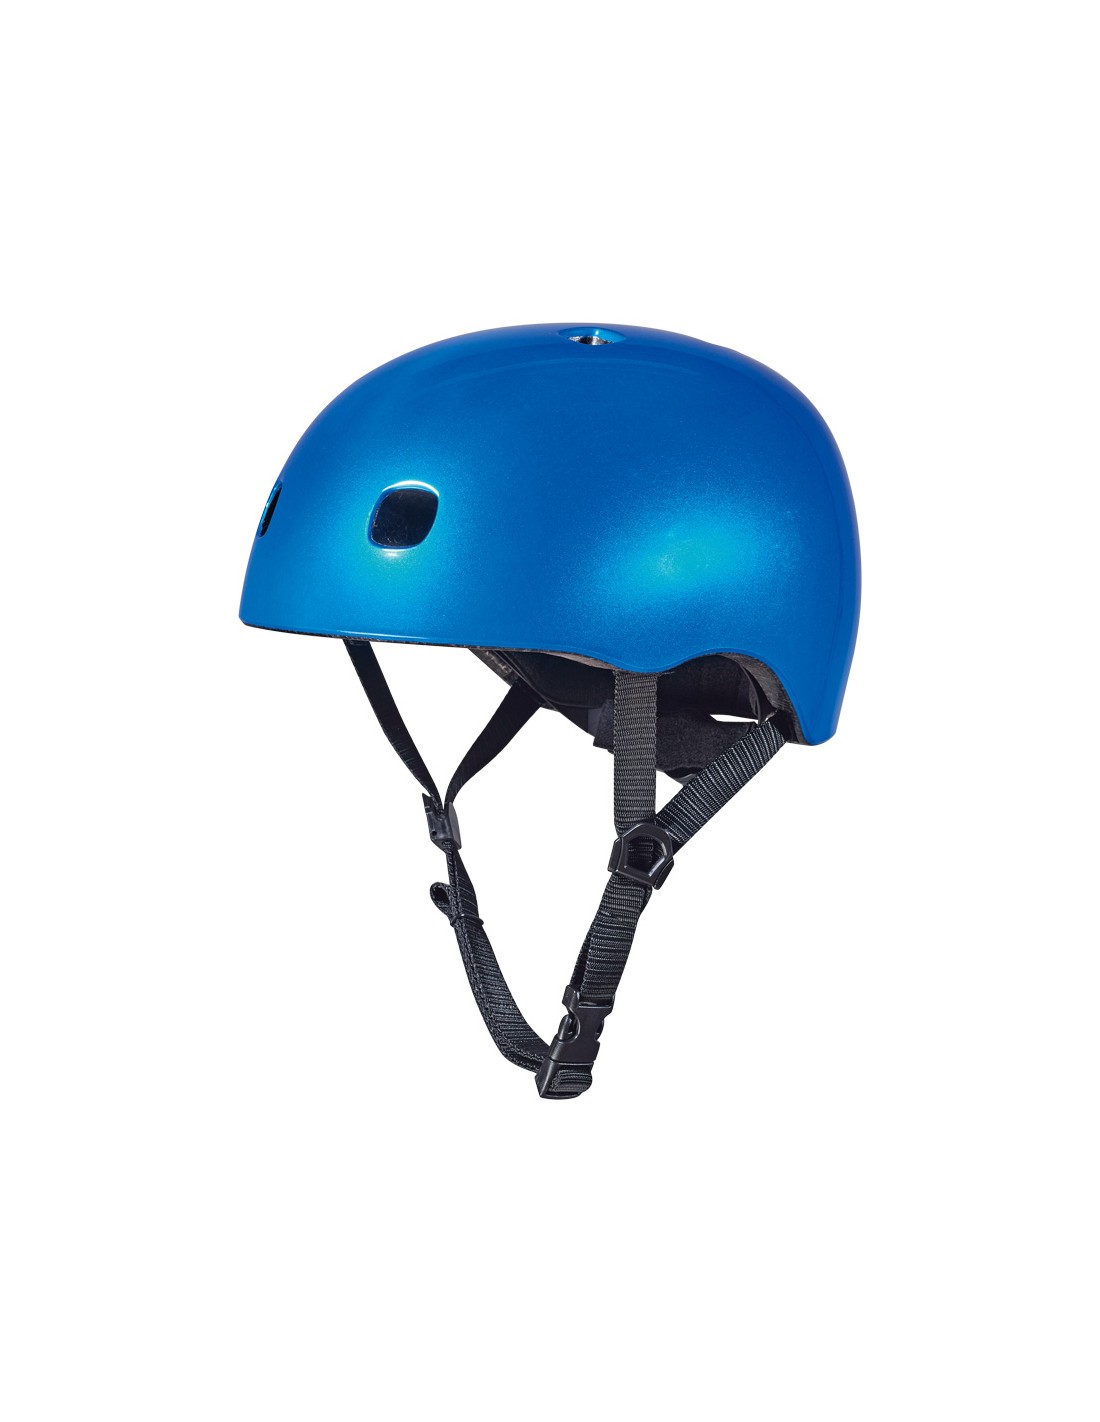 Micro Helm Dark Blue Metallic Scooterhelmgröße - S, von Micro Scooter